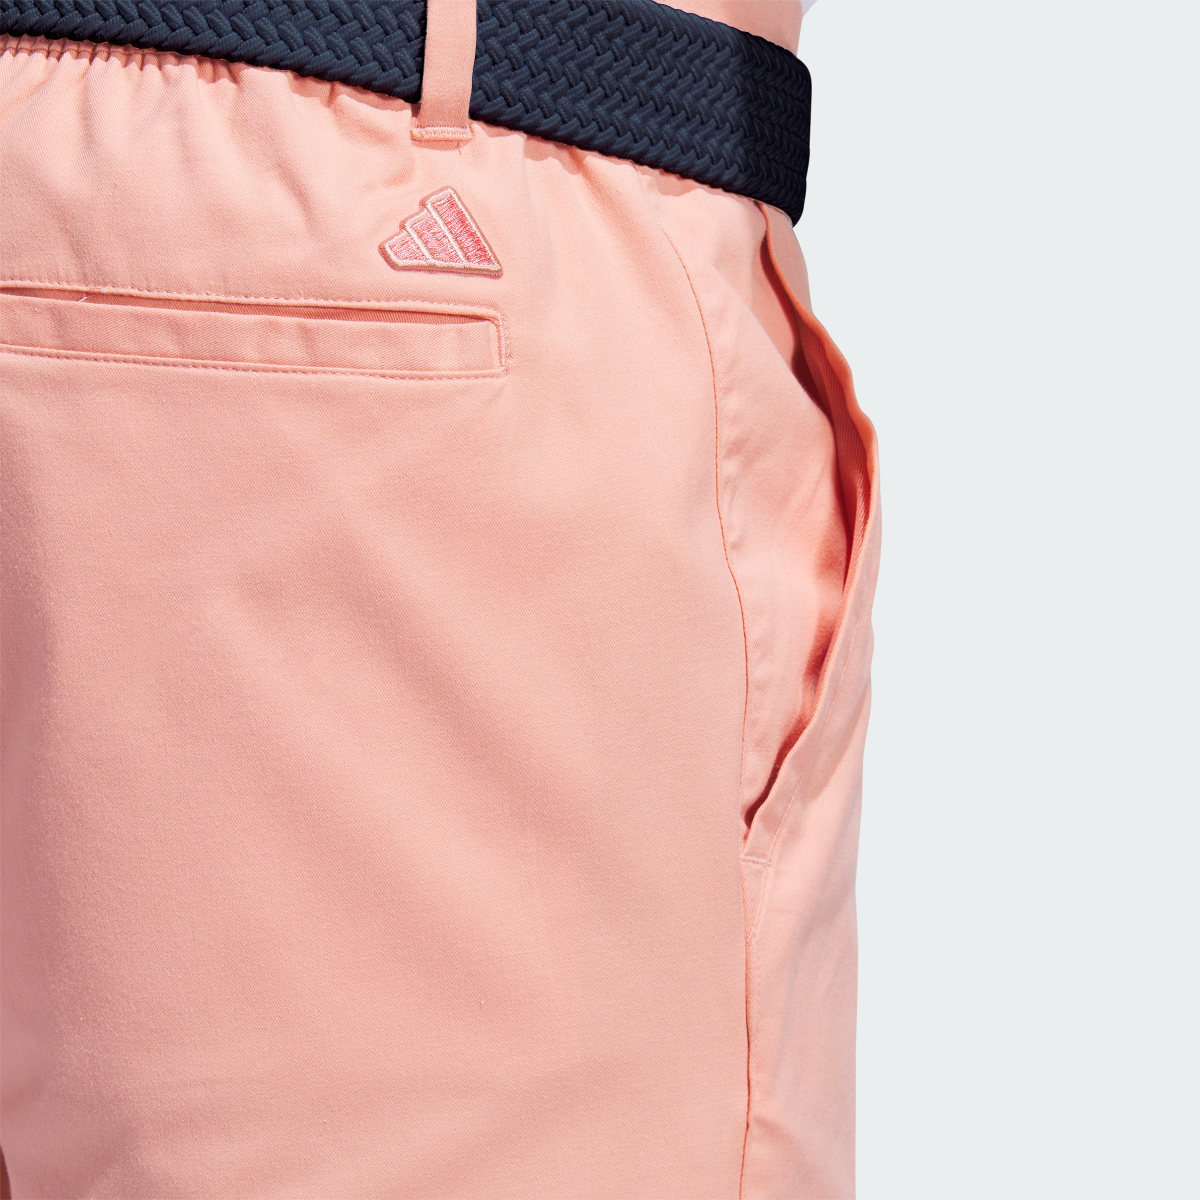 Adidas Go-To 9-Inch Golf Shorts. 6